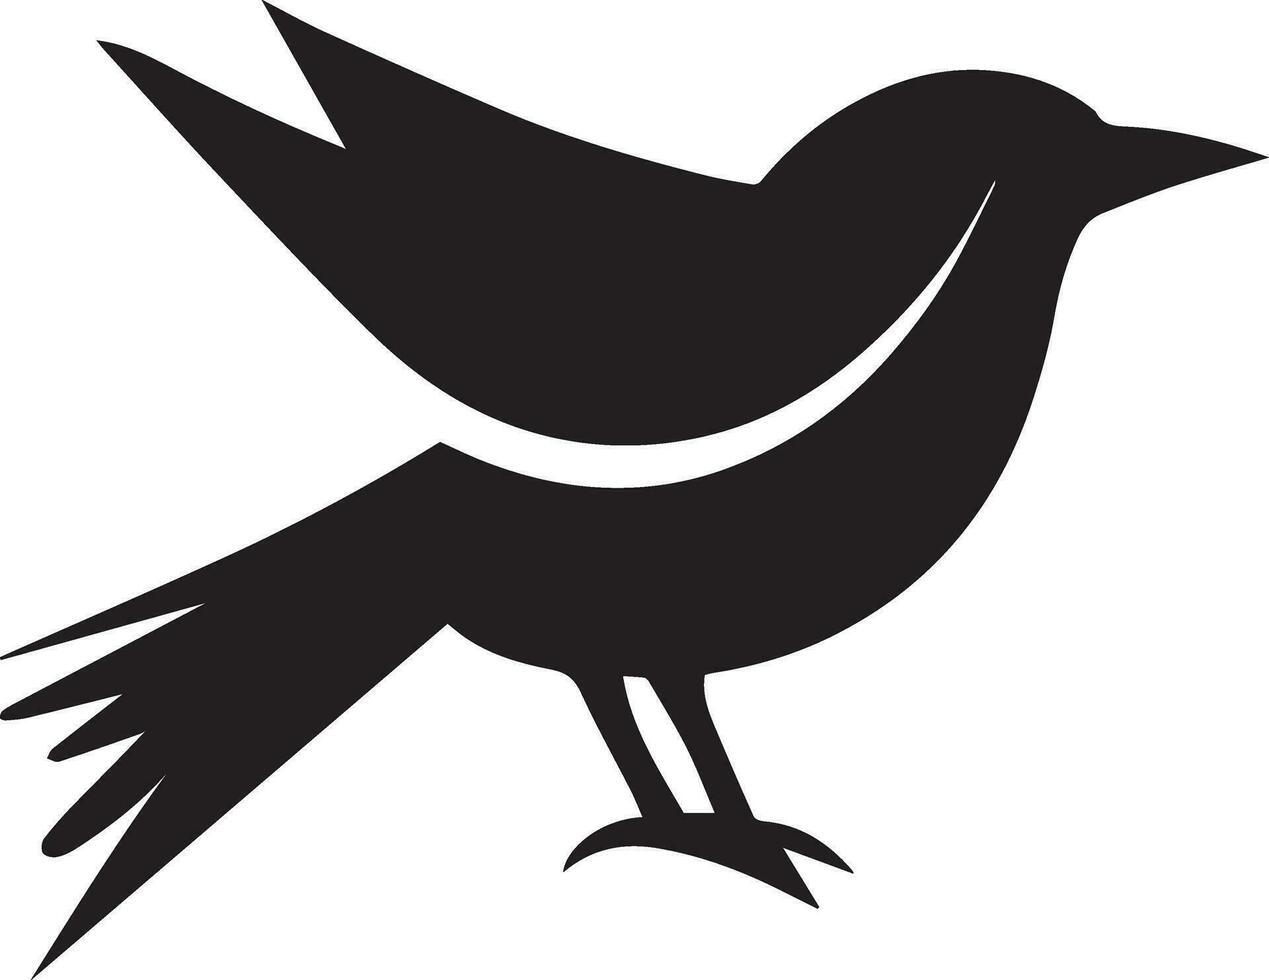 Bird logo concept vector silhouette illustration